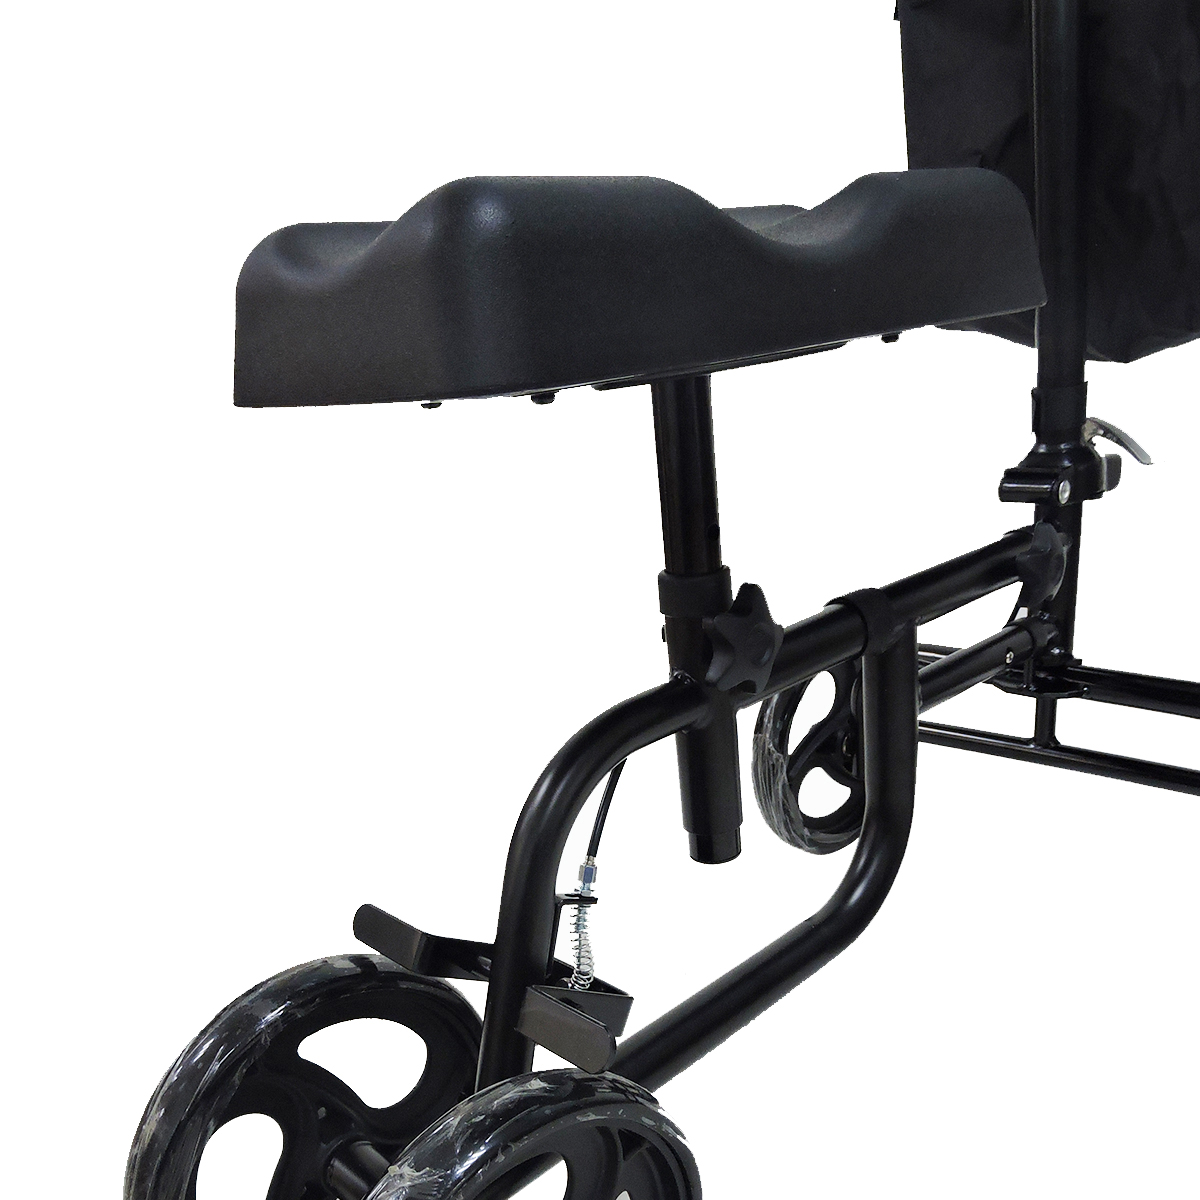 Mobility-Knee-Walker-Scooter-Roller-Crutch-Leg-Steerable-Foldable-Design-Adjustable-Height-Adjustabl-1940054-9